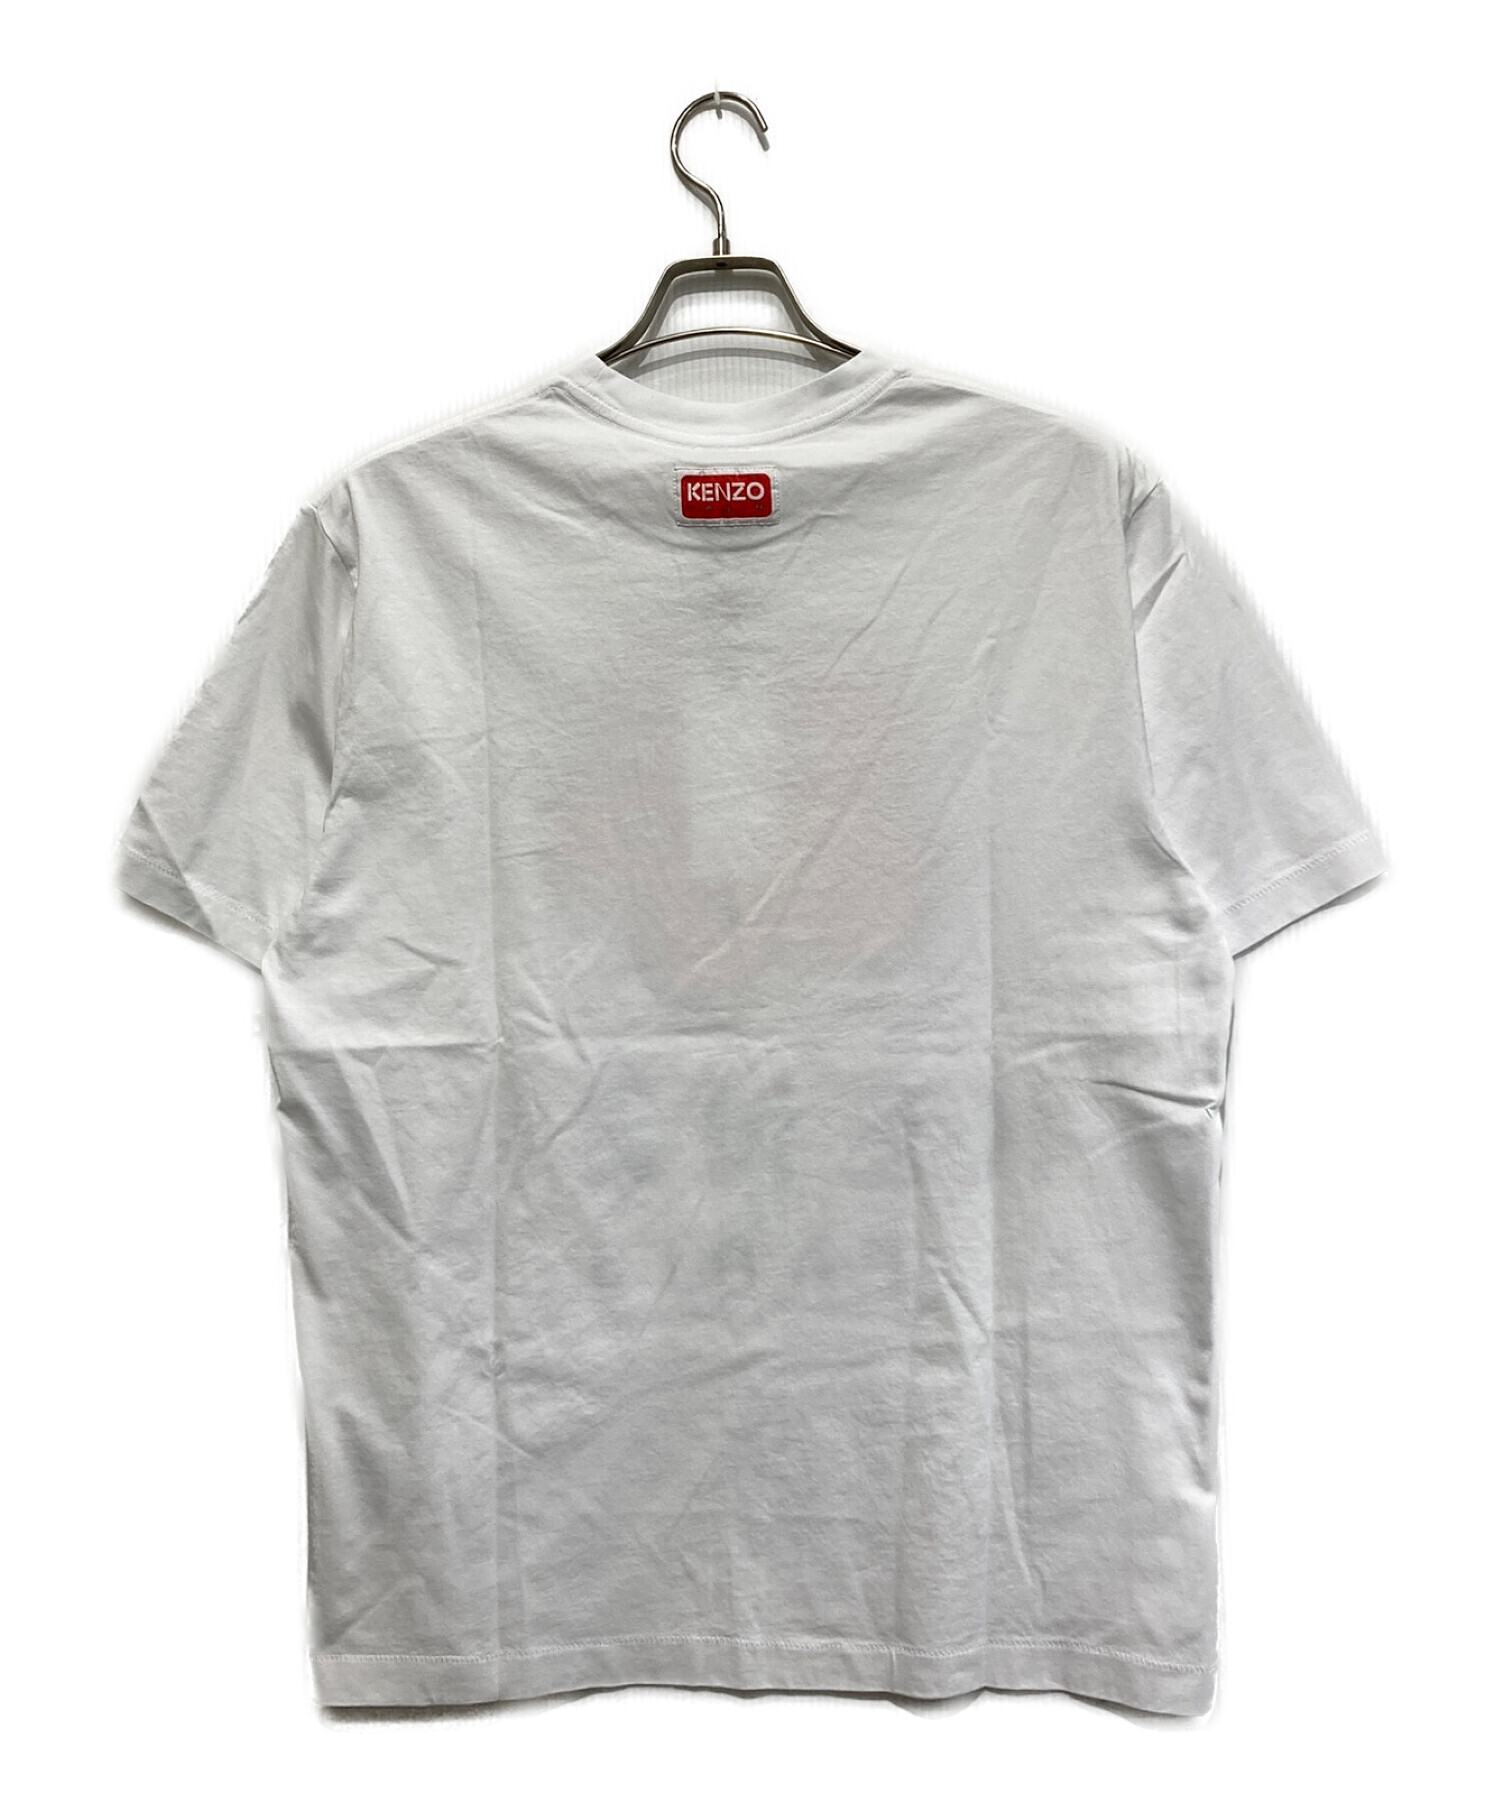 新品未使用 KENZO ケンゾー BOKE FLOWER Tシャツ Sサイズ-